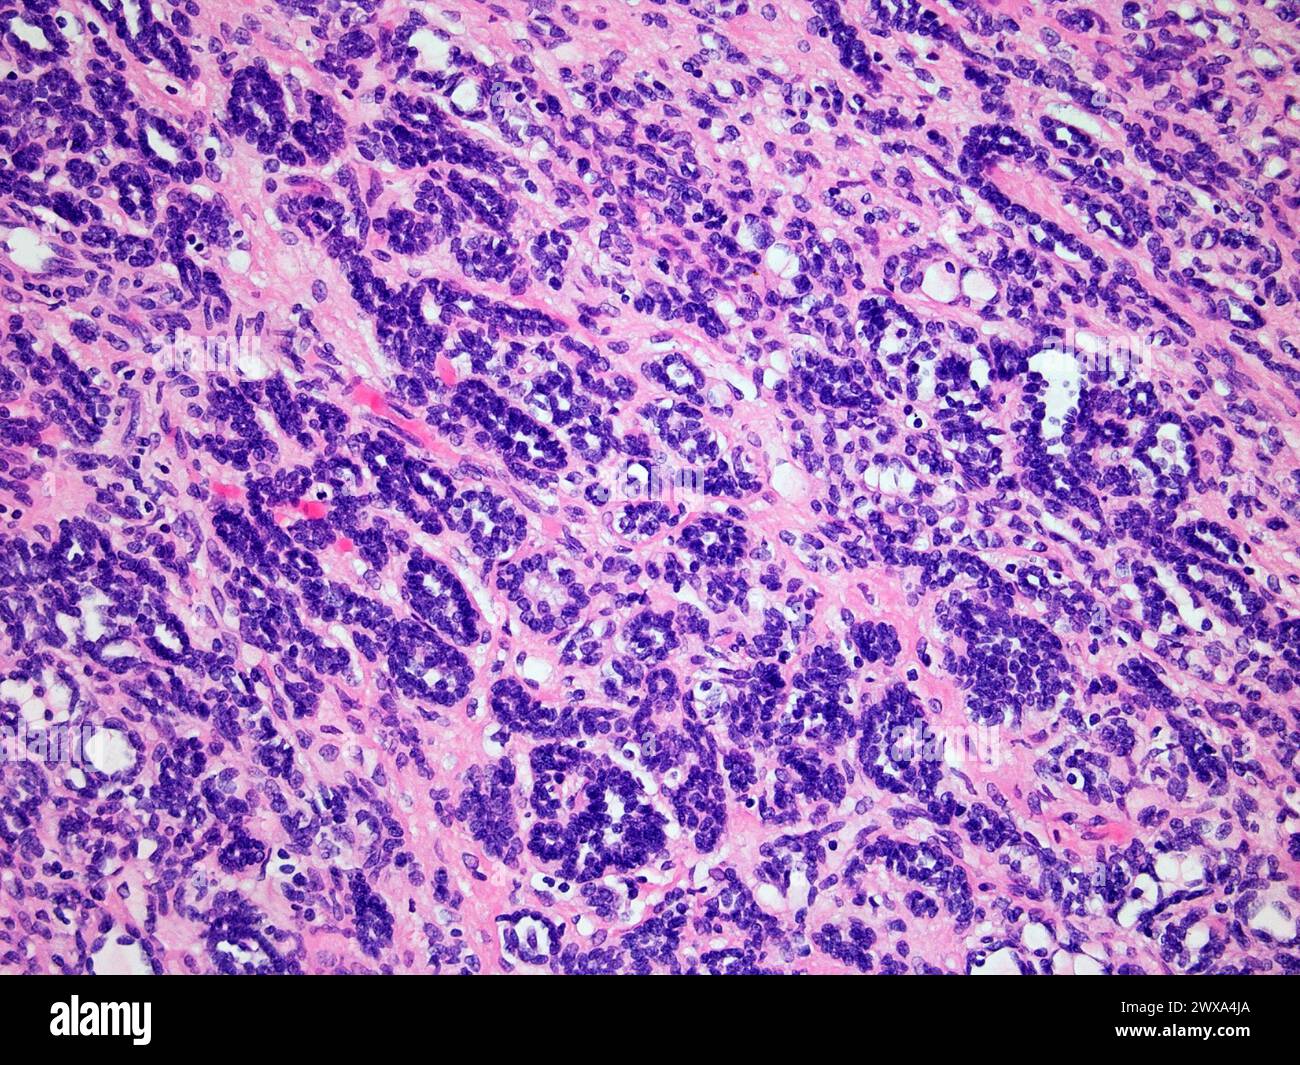 Wilms-Tumor oder Nephroblastom einer Kinderniere bei 200-facher Vergrößerung mit Hämatoxylin- und Eosin-Färbung eines der häufigsten Krebsarten Affec Stockfoto